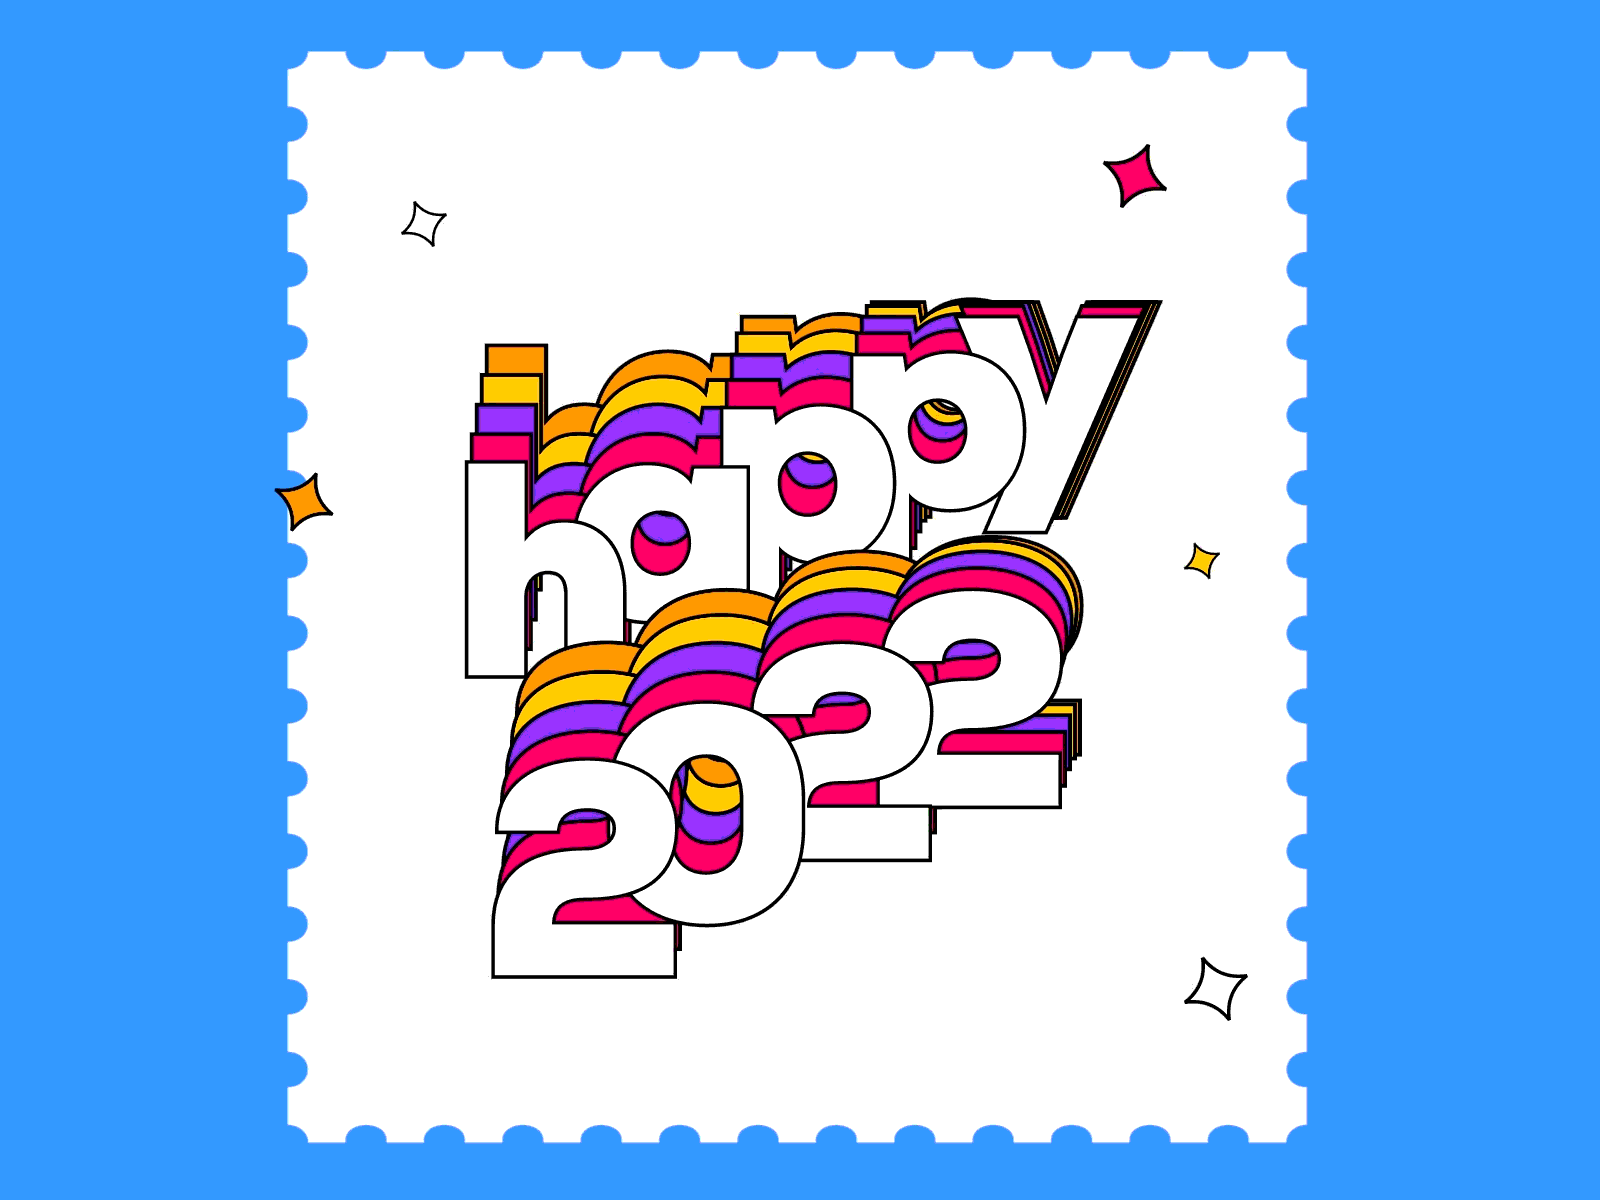 2022 stamp